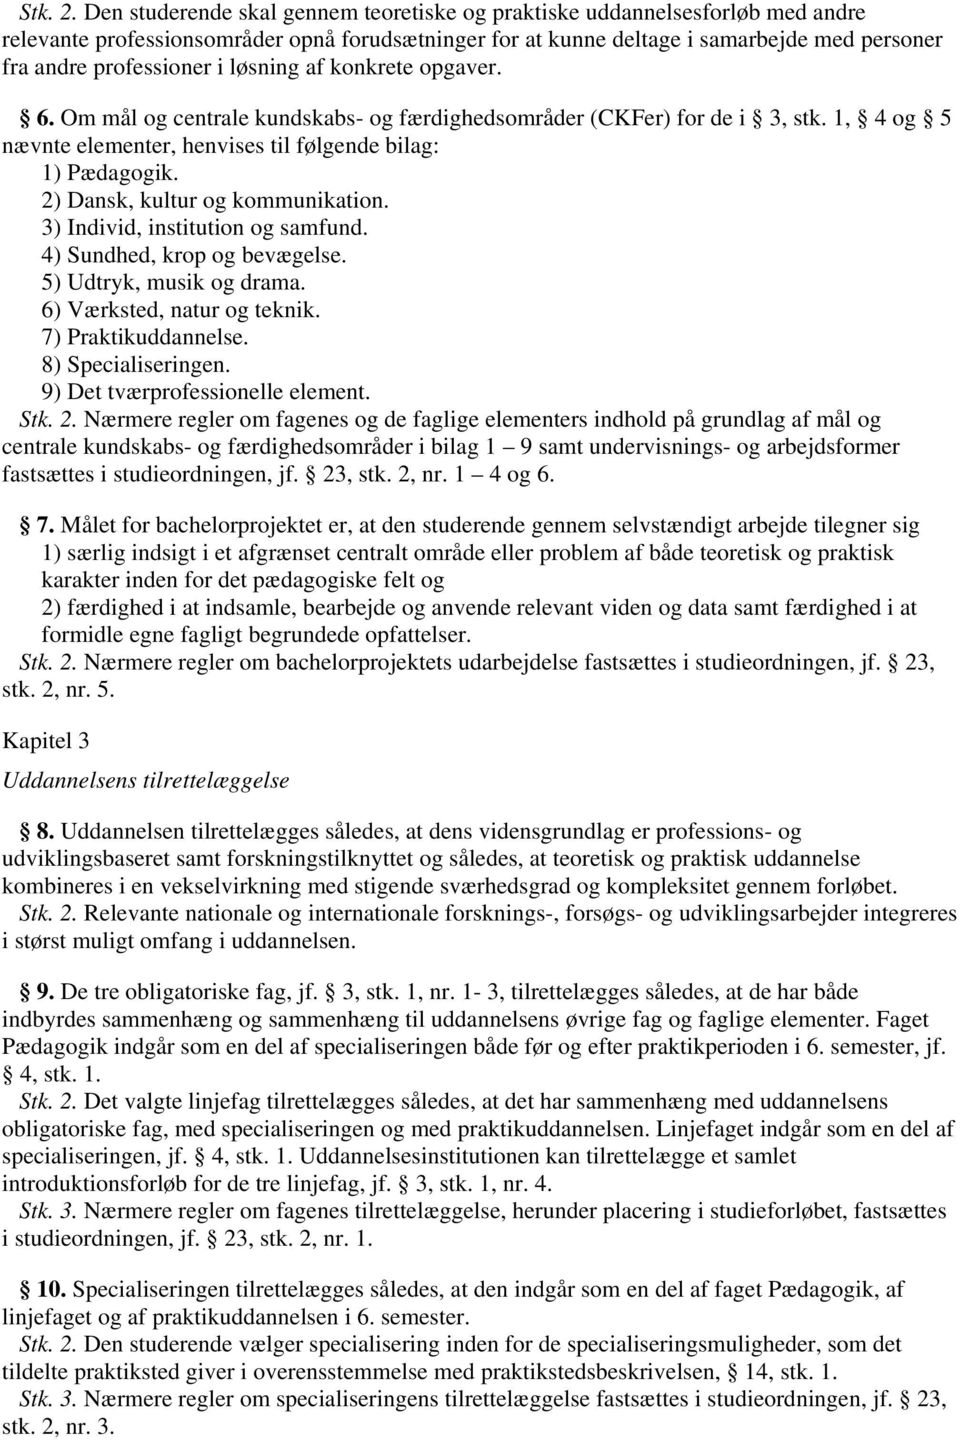 løsning af konkrete opgaver. 6. Om mål og centrale kundskabs- og færdighedsområder (CKFer) for de i 3, stk. 1, 4 og 5 nævnte elementer, henvises til følgende bilag: 1) Pædagogik.